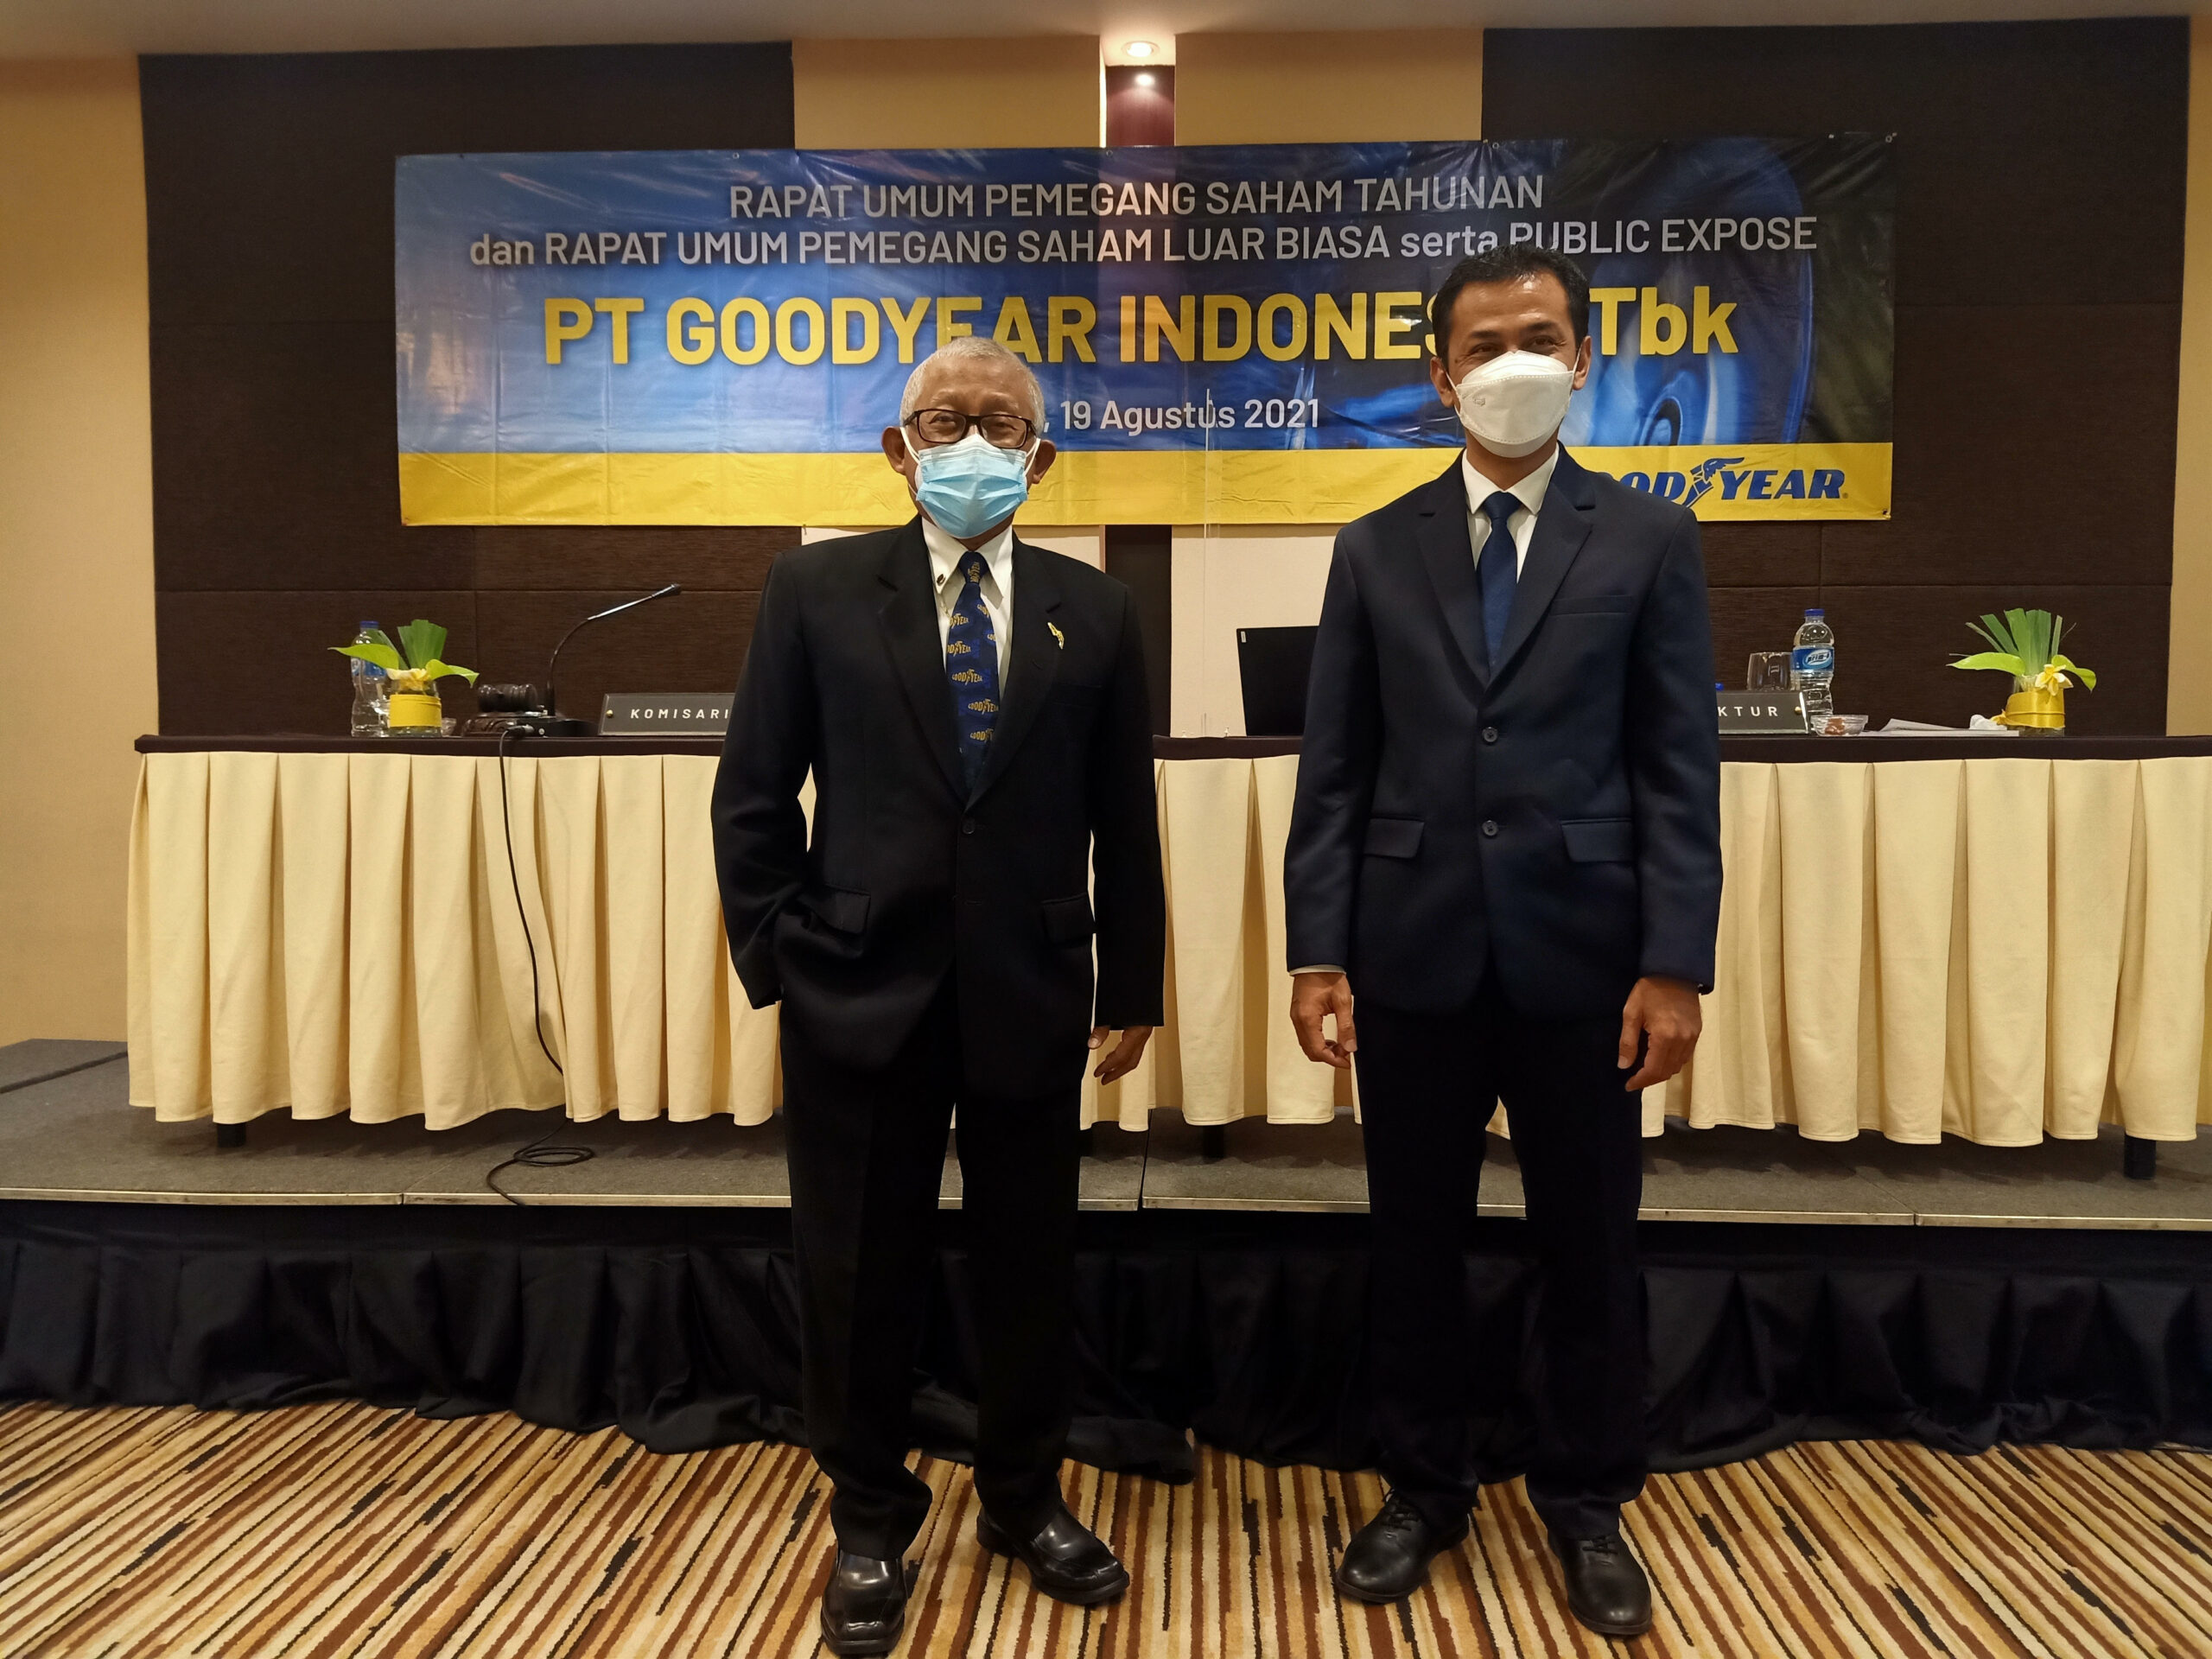 Penghasilan Goodyear Indonesia di 2020 Capai Rp 1.5 Triliun Lebih